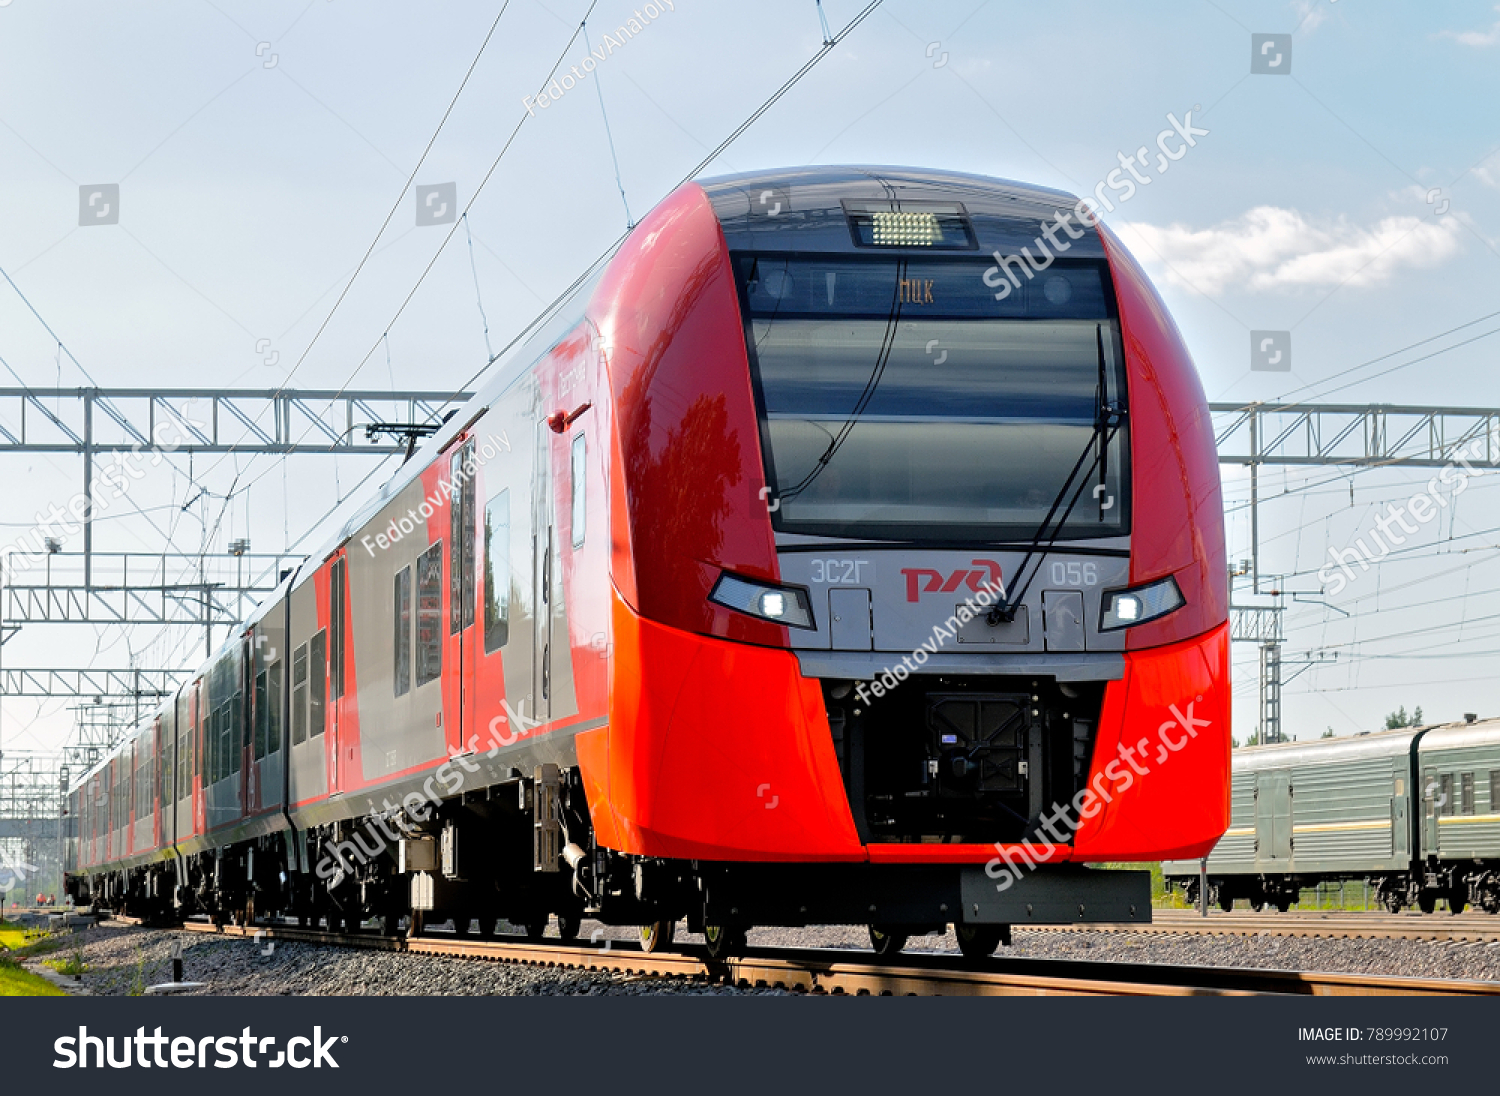 поезд санкт петербург псков